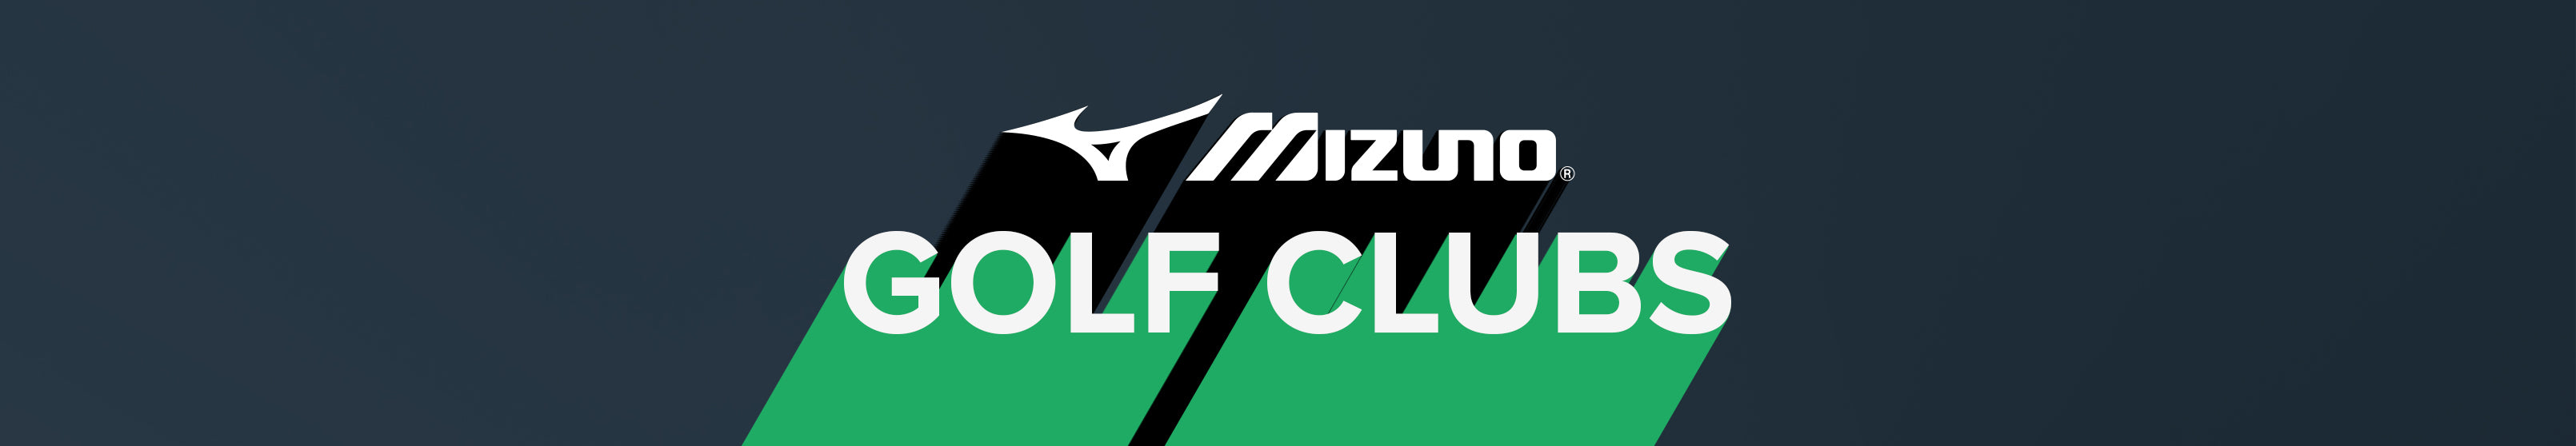 Mizuno Golf Clubs